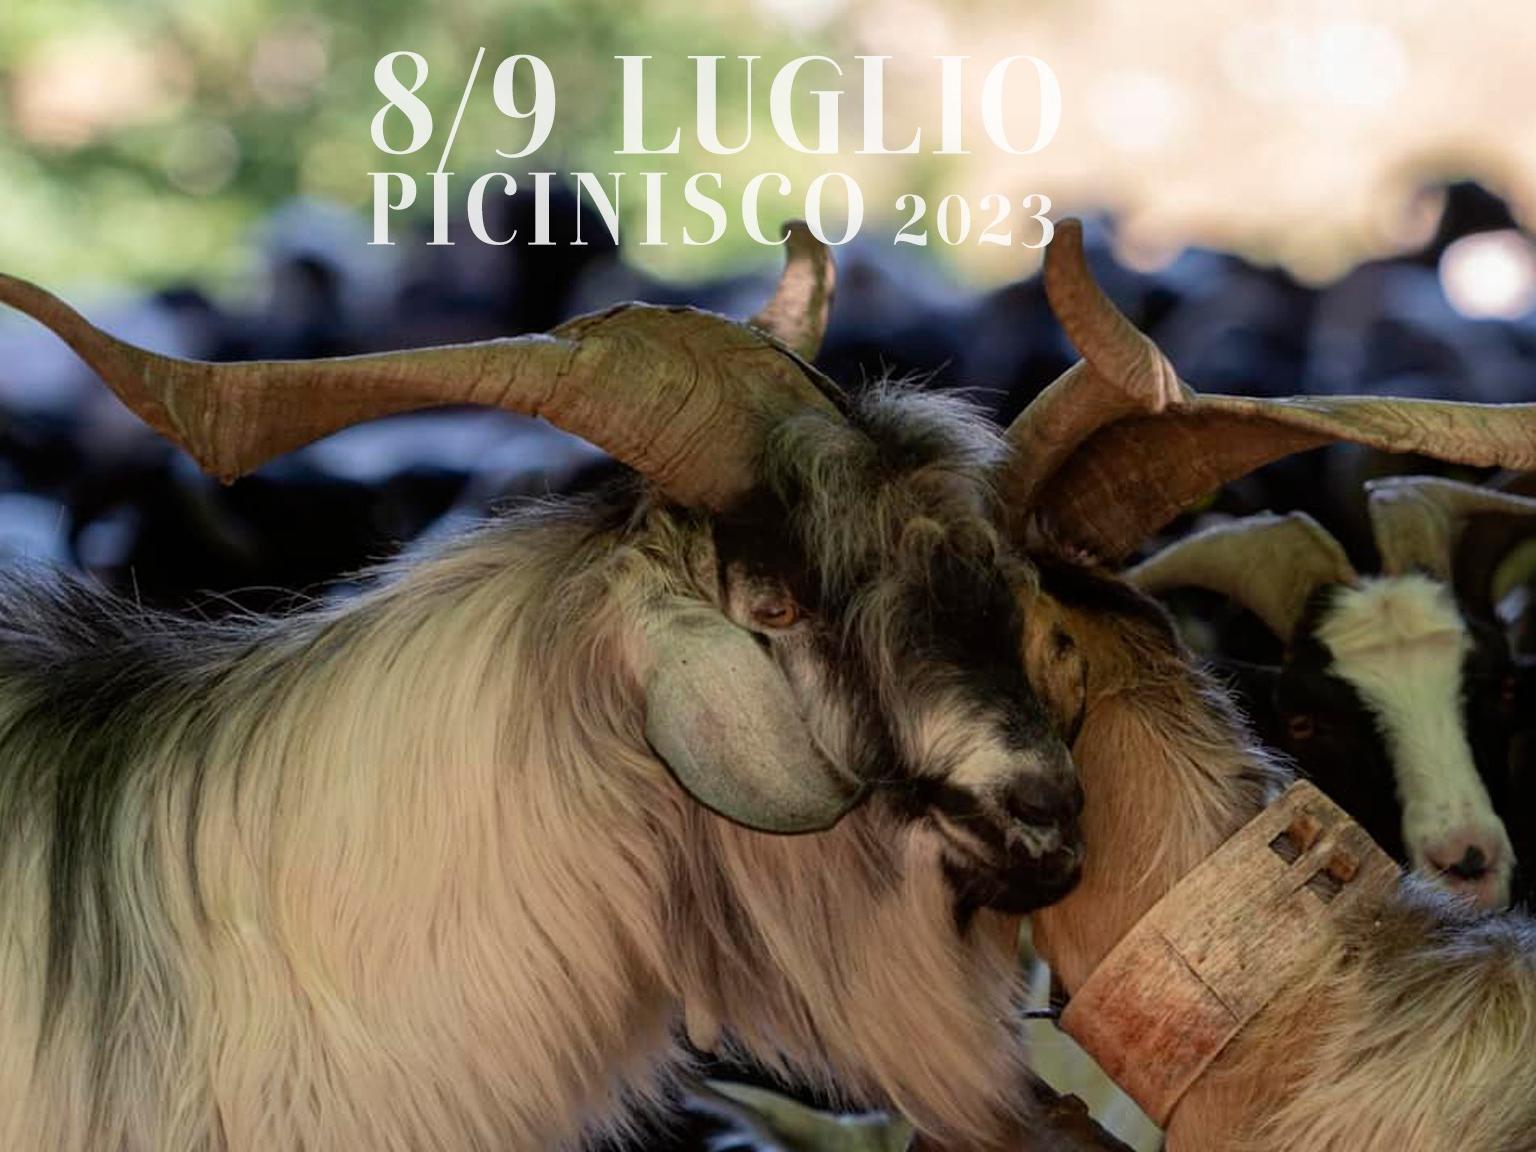 pastorizia-in-festival-picinisco-8-9-luglio-2023